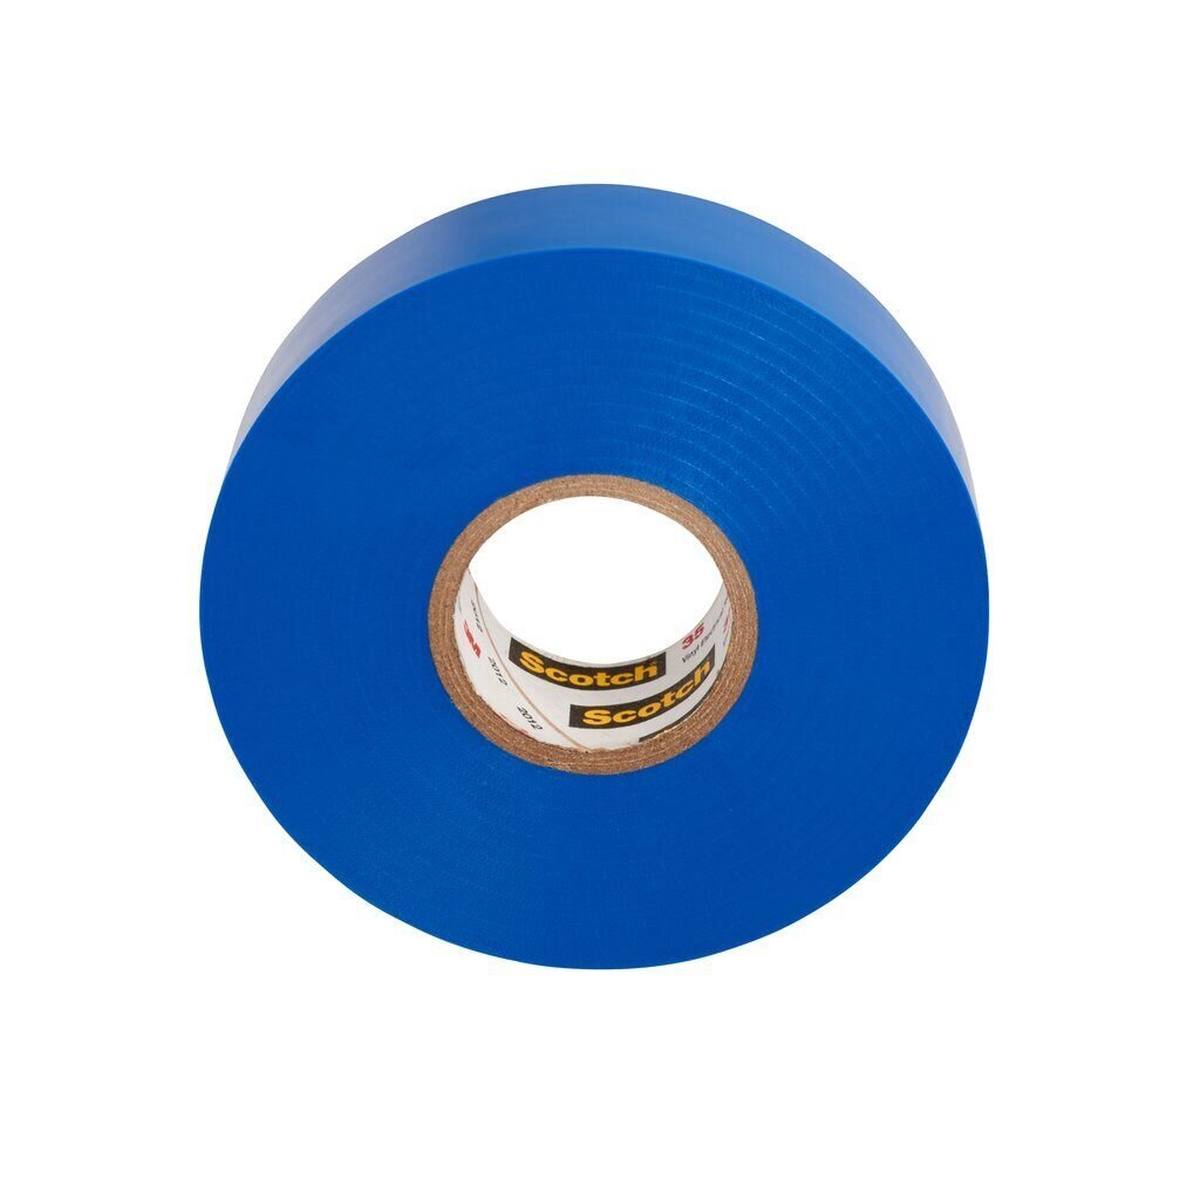 3M Scotch 35 Vinyl ruban électrique isolant, bleu, 19 mm x 20 m, 0,18 mm